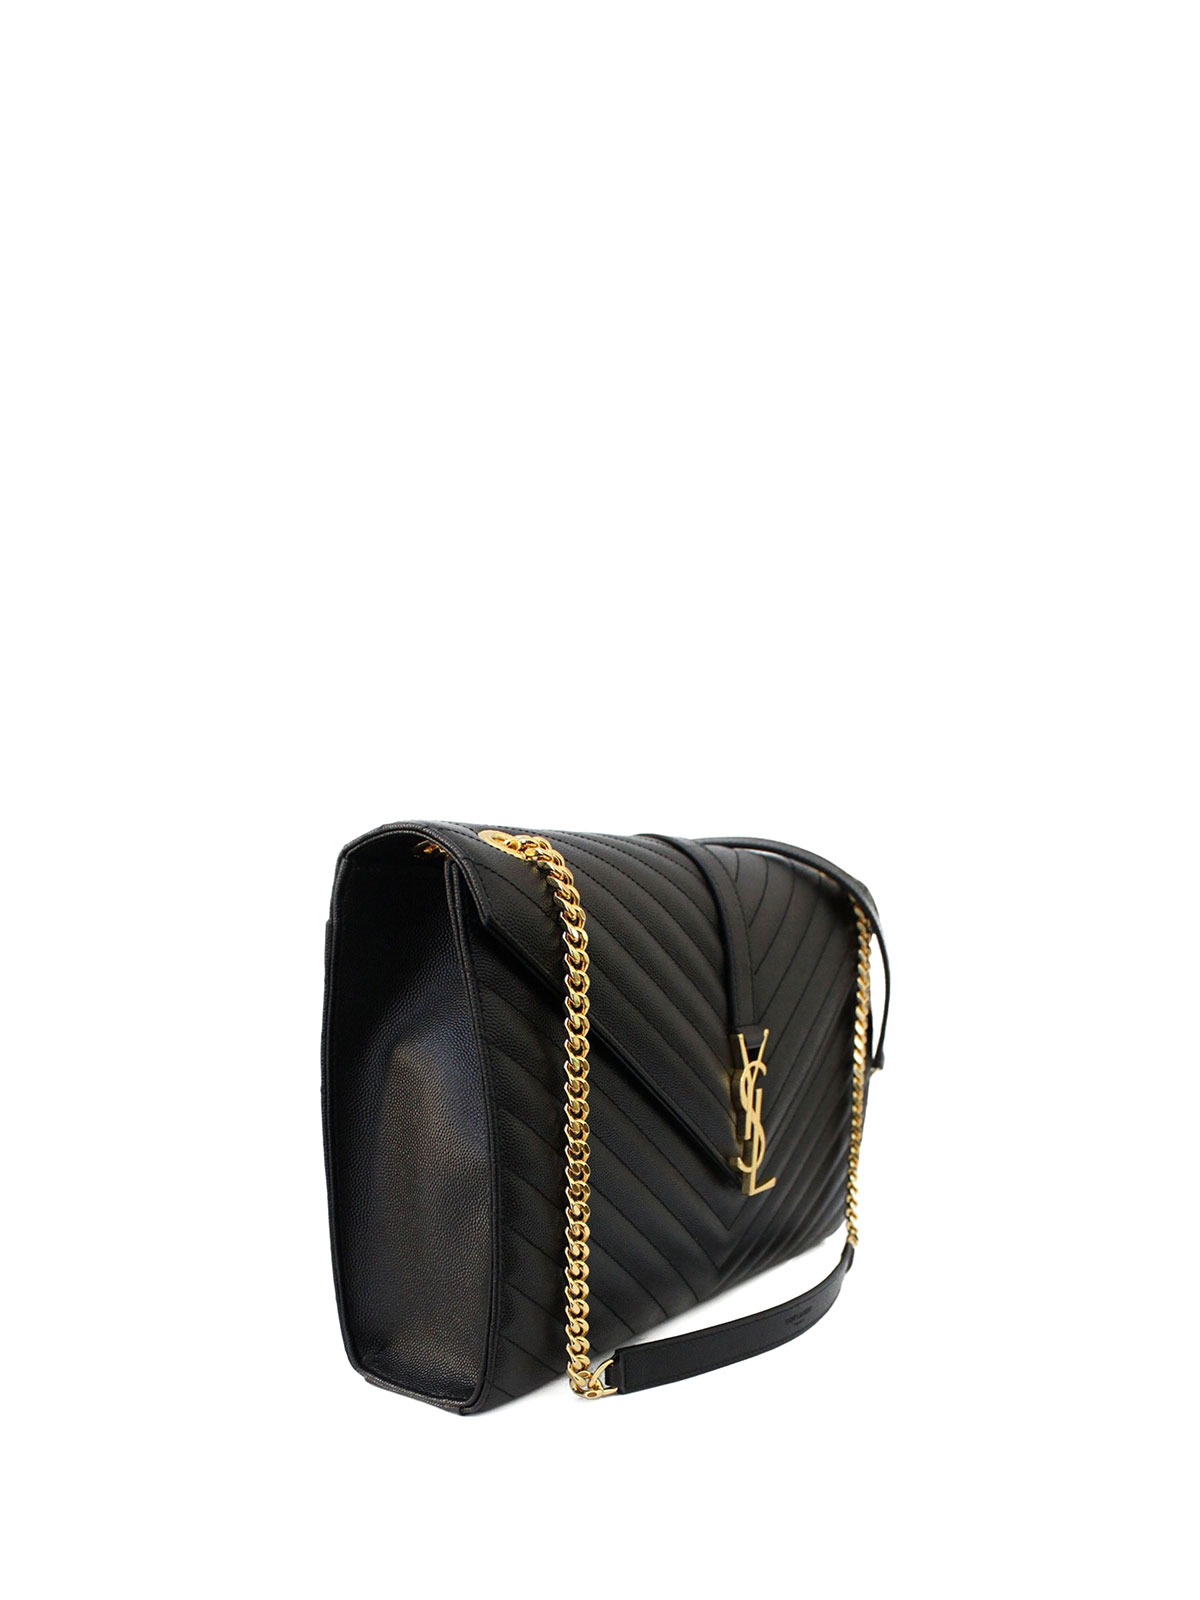 Shoulder bags Saint Laurent - Monogram matelassé leather satchel -  396910BOW011000